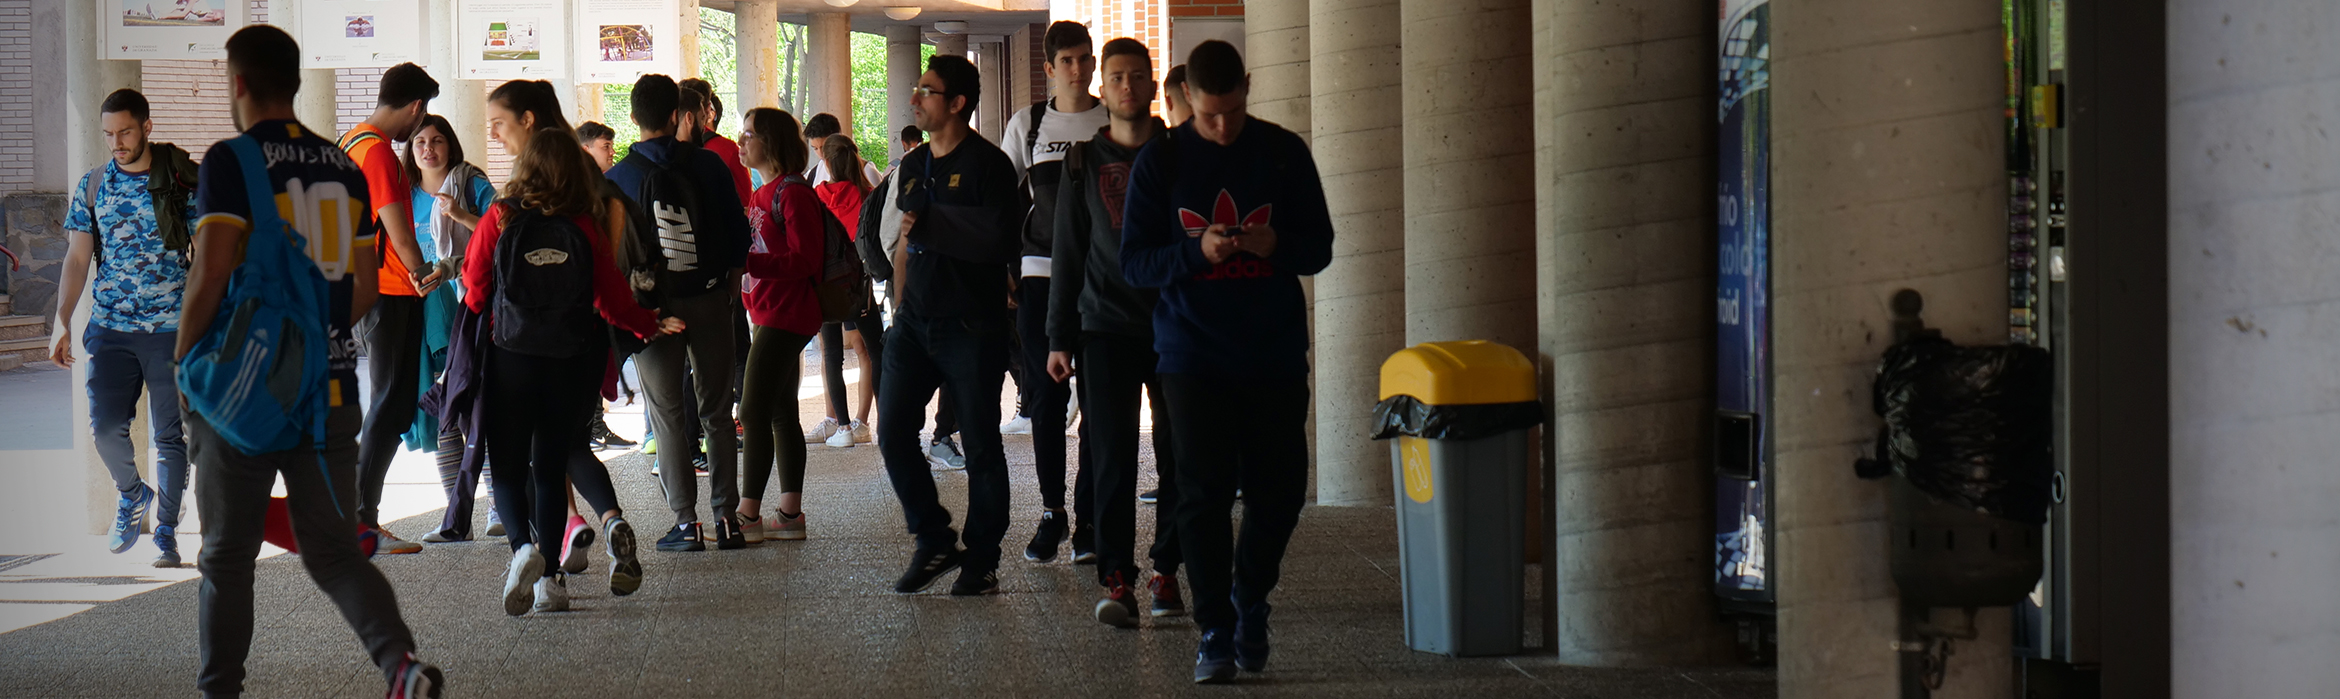 Estudiantes de la Facultad de Ciencias del Deporte caminando por zonas exteriores techadas entre edificios.